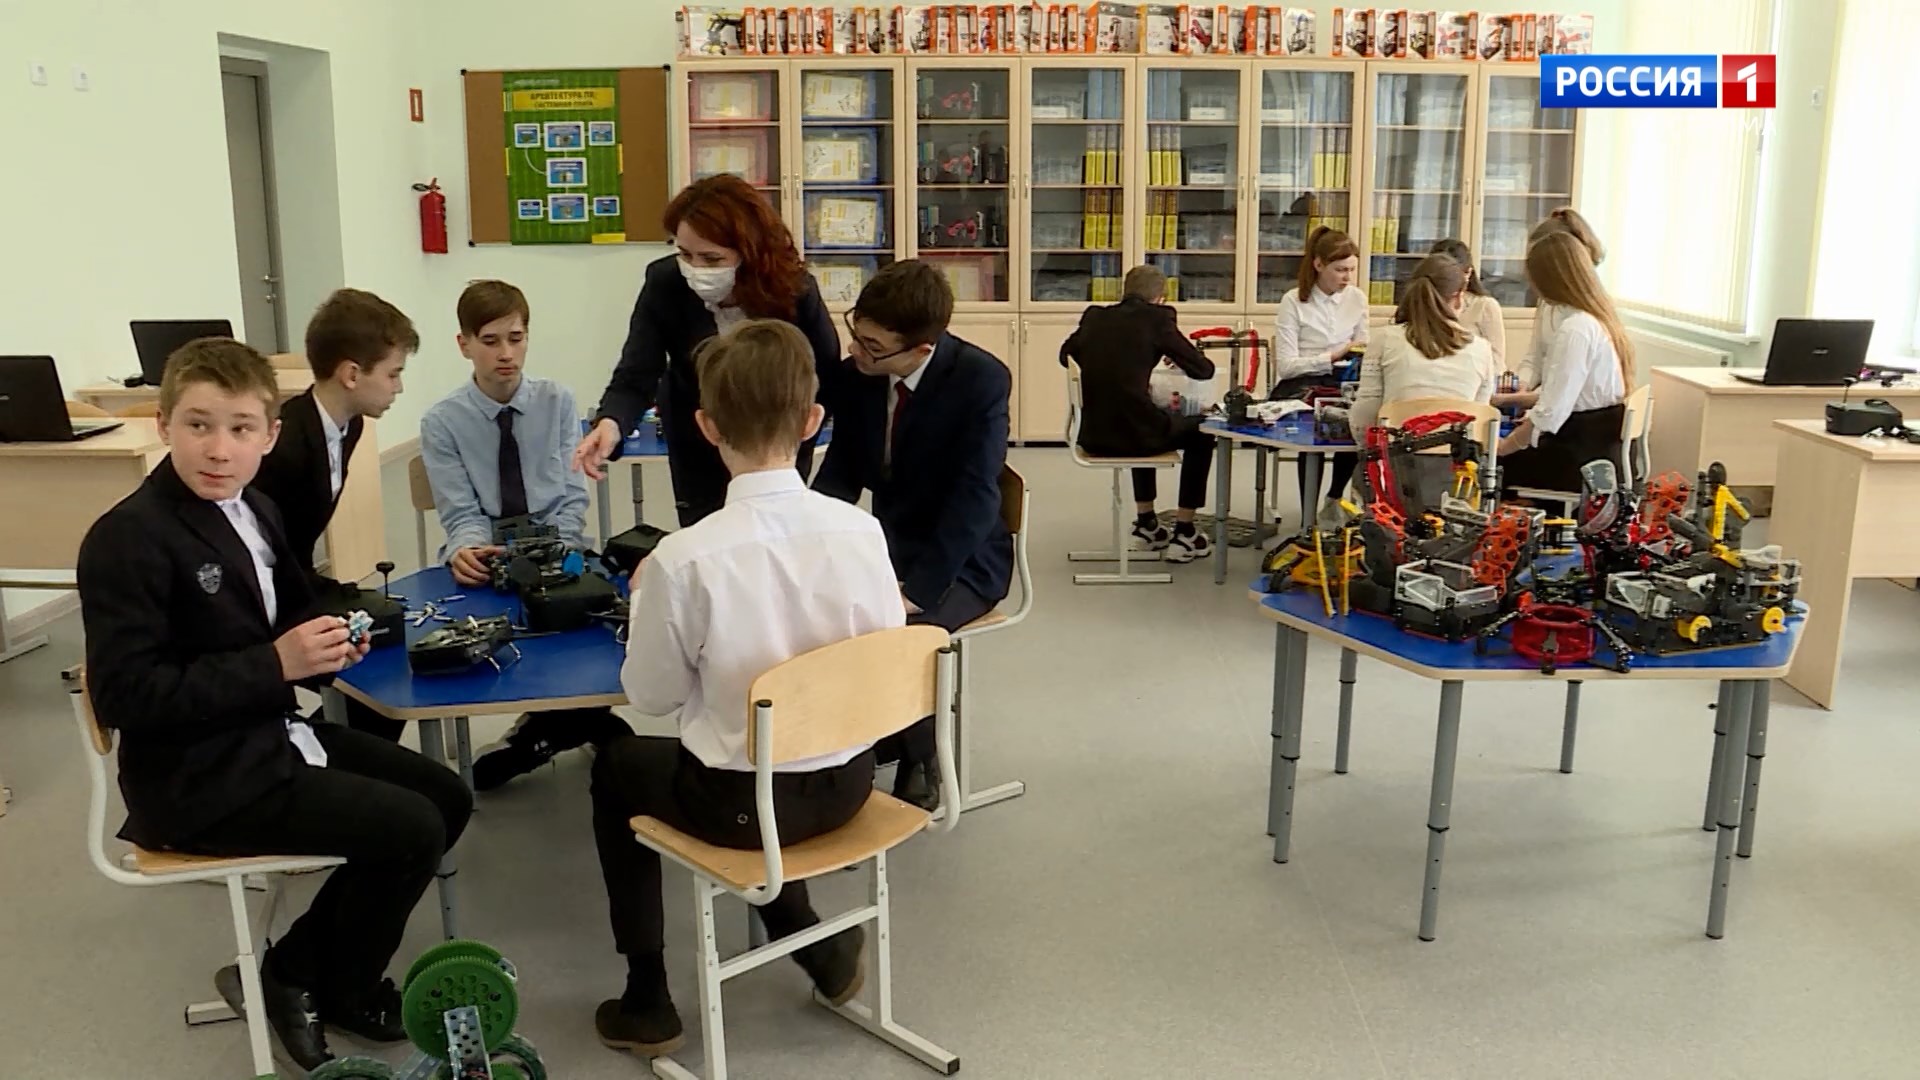 «Современная школа»: костромским детям помогают учиться роботы, дроны и 3D-принтеры